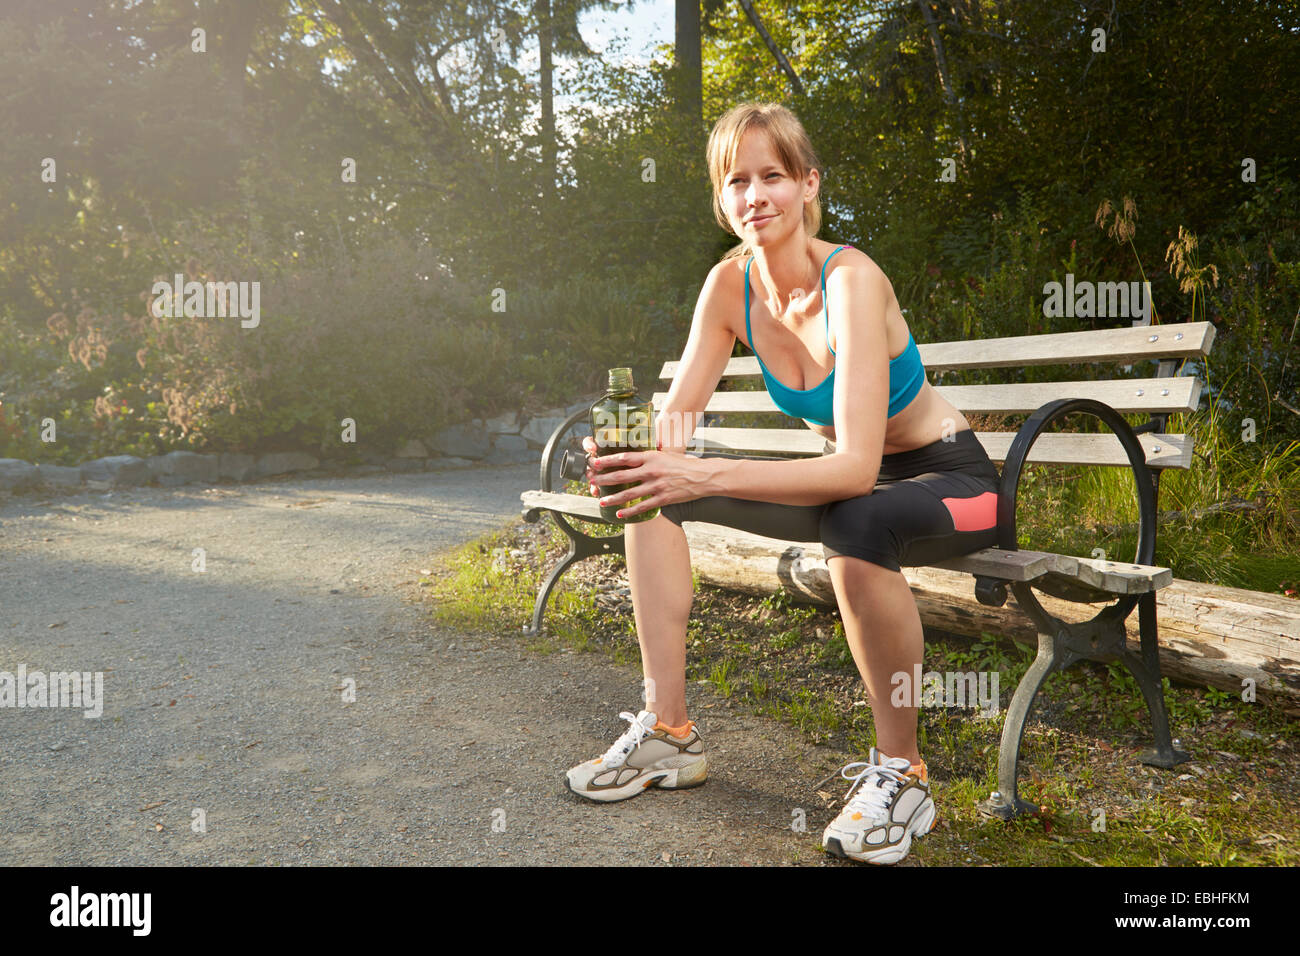 Portrait of smiling female runner taking a break on park bench Stock Photo